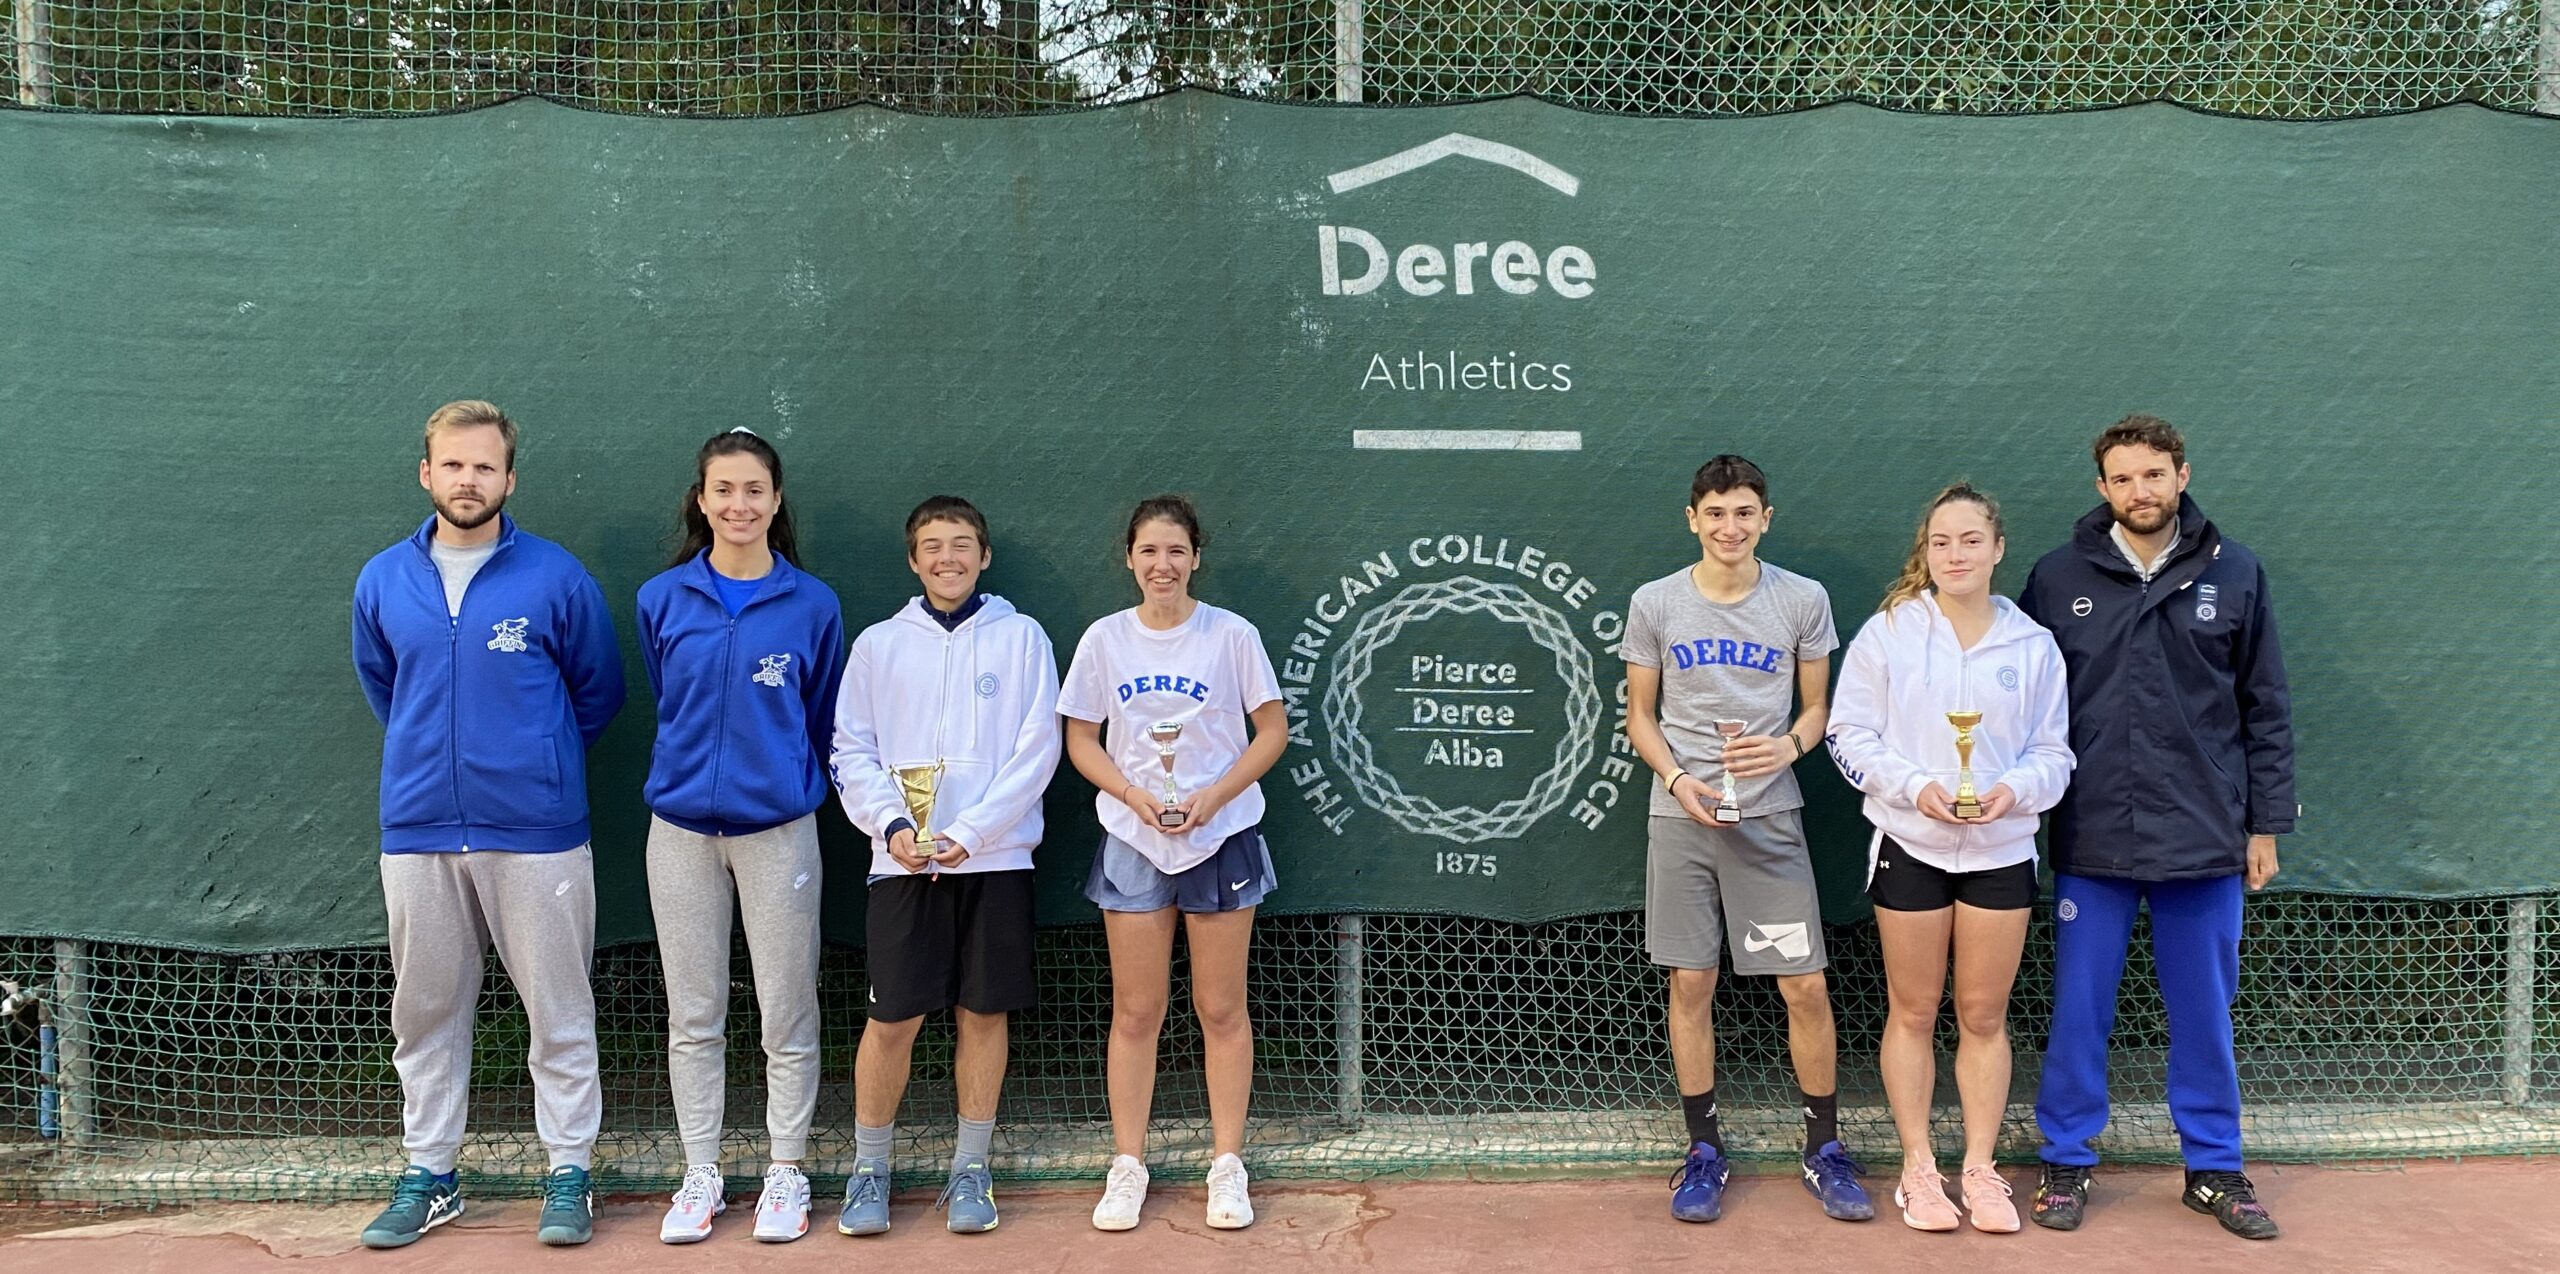 1η & 2η θέση για την Deree Tennis Αcademy στα Ε3 τουρνουά κάτω των 16 ετών σε Μαραθώνα και Ηλιούπολη!